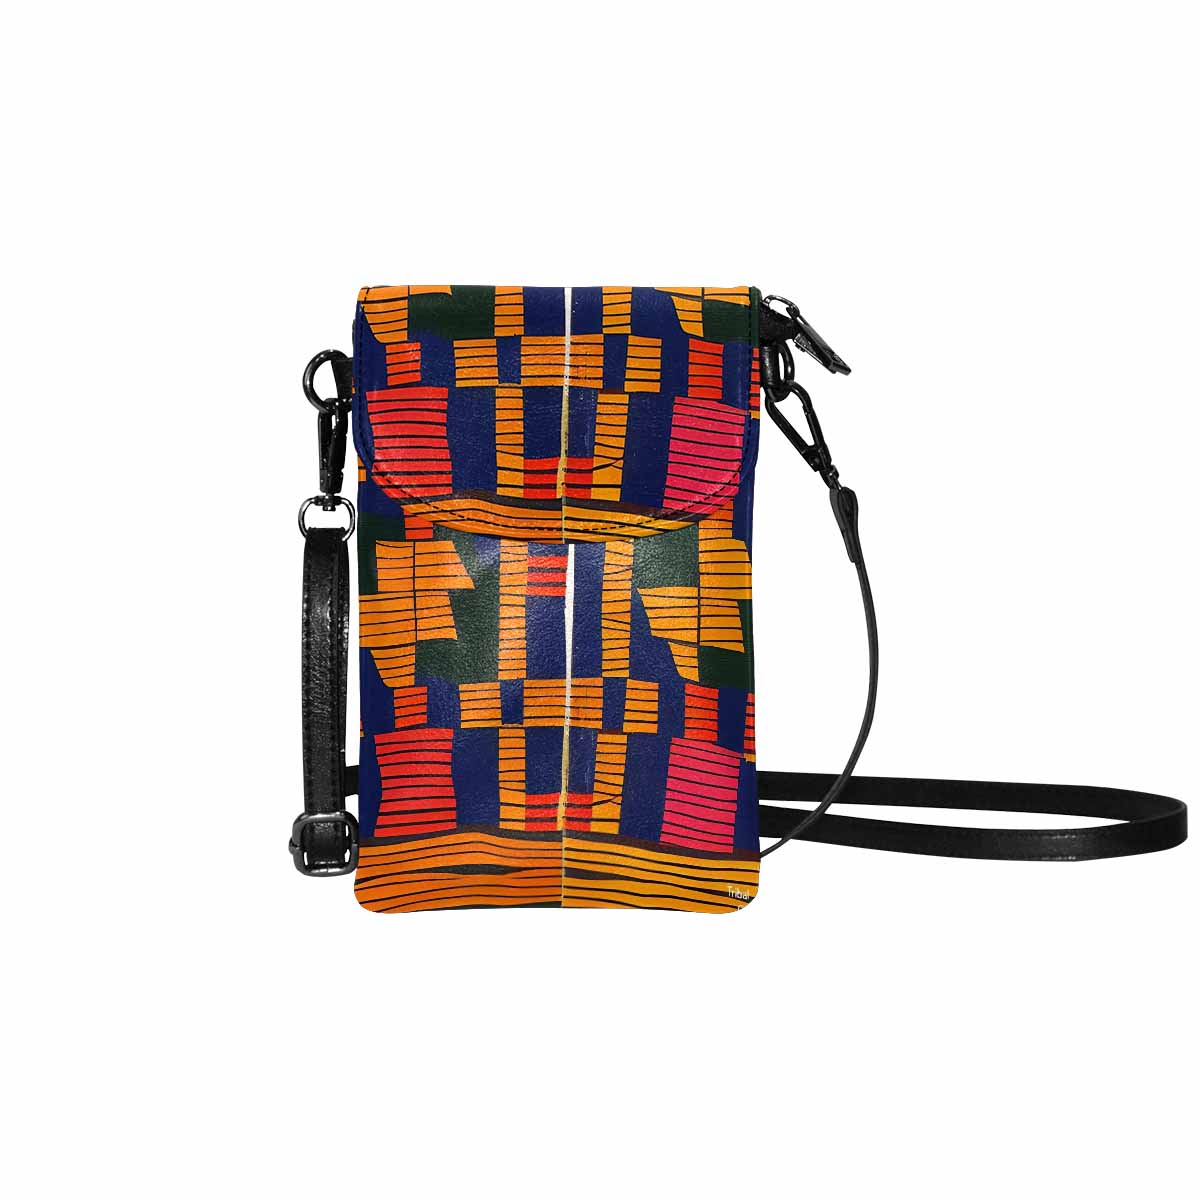 African art, cell phone, keys purse, design 18